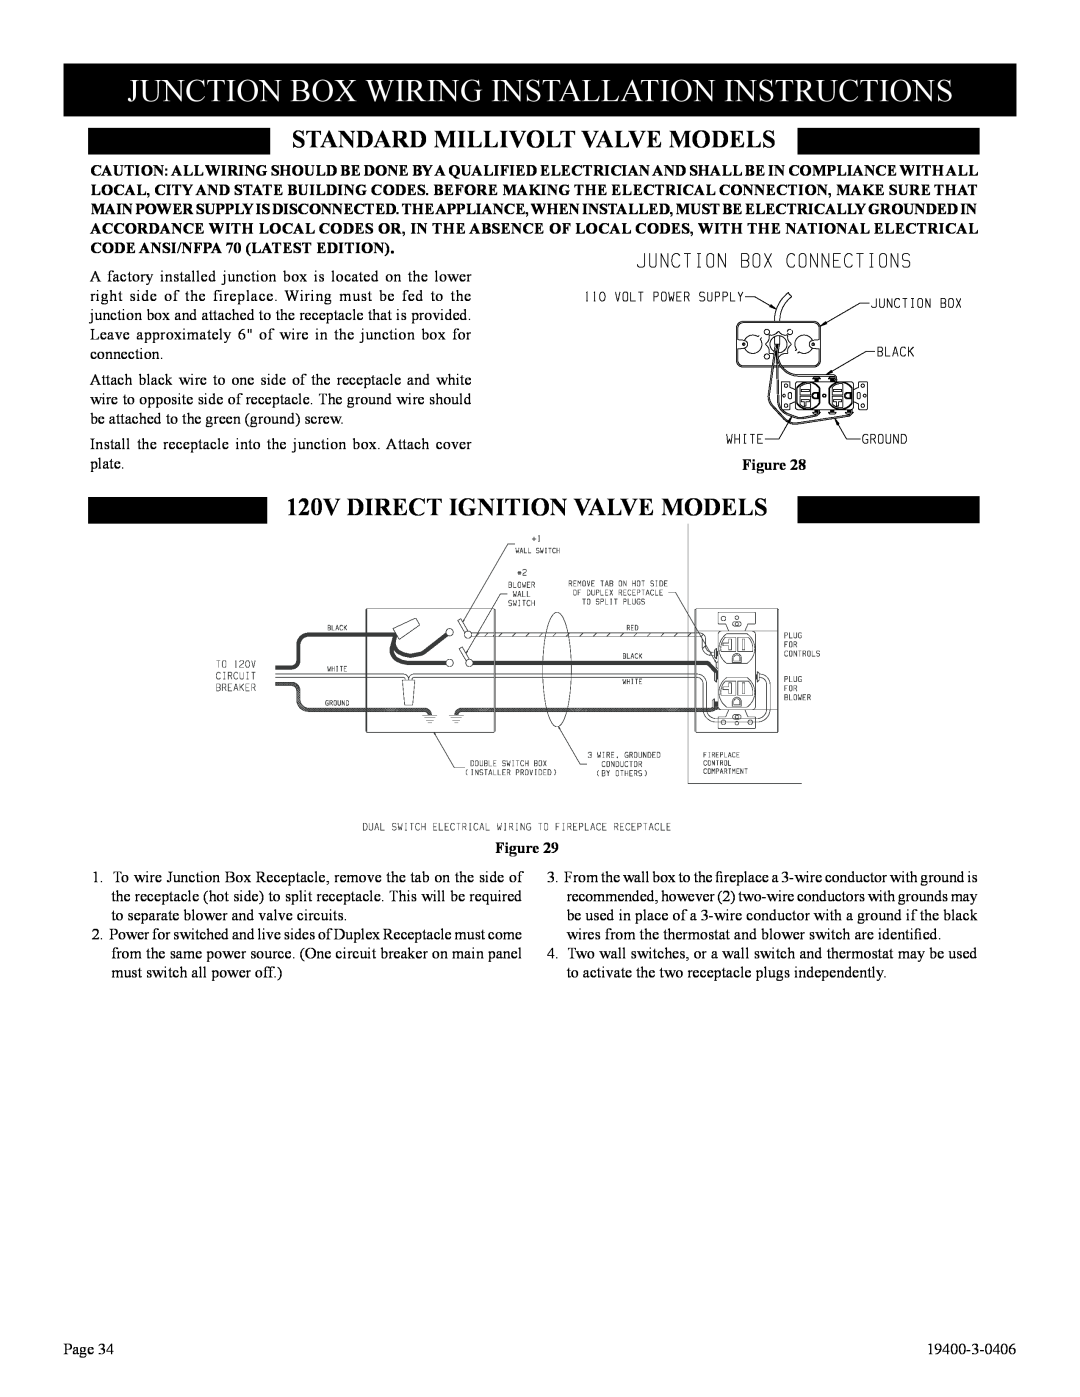 Vulcan-Hart BVD36FP32(F,L)N-1 Junction Box Wiring Installation Instructions, Standard Millivolt Valve Models 